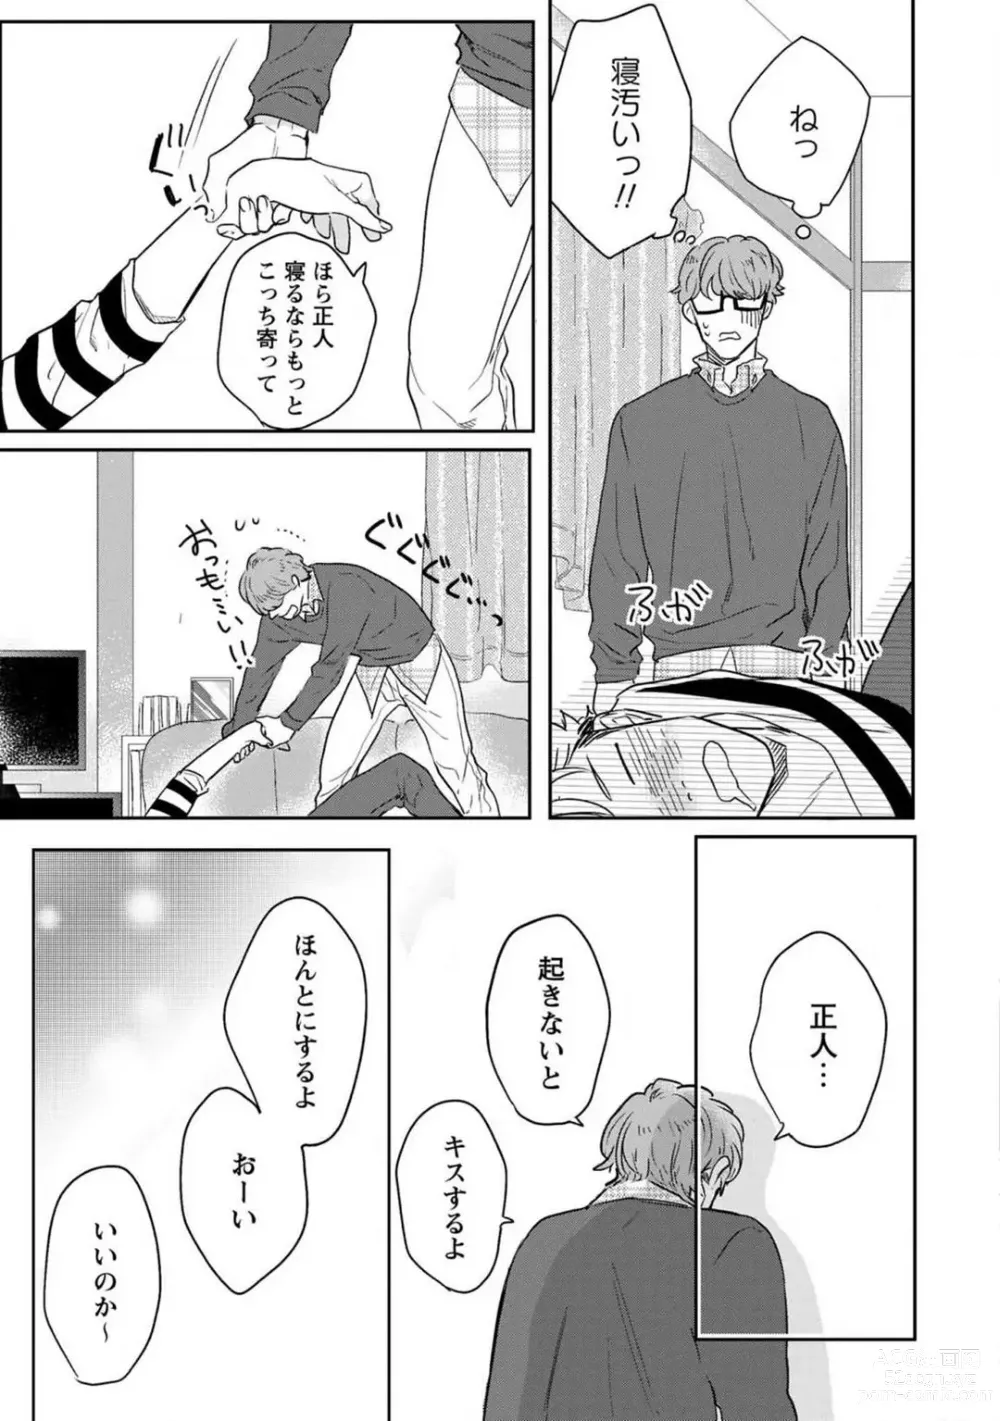 Page 8 of manga Kimi no Shiranai xx